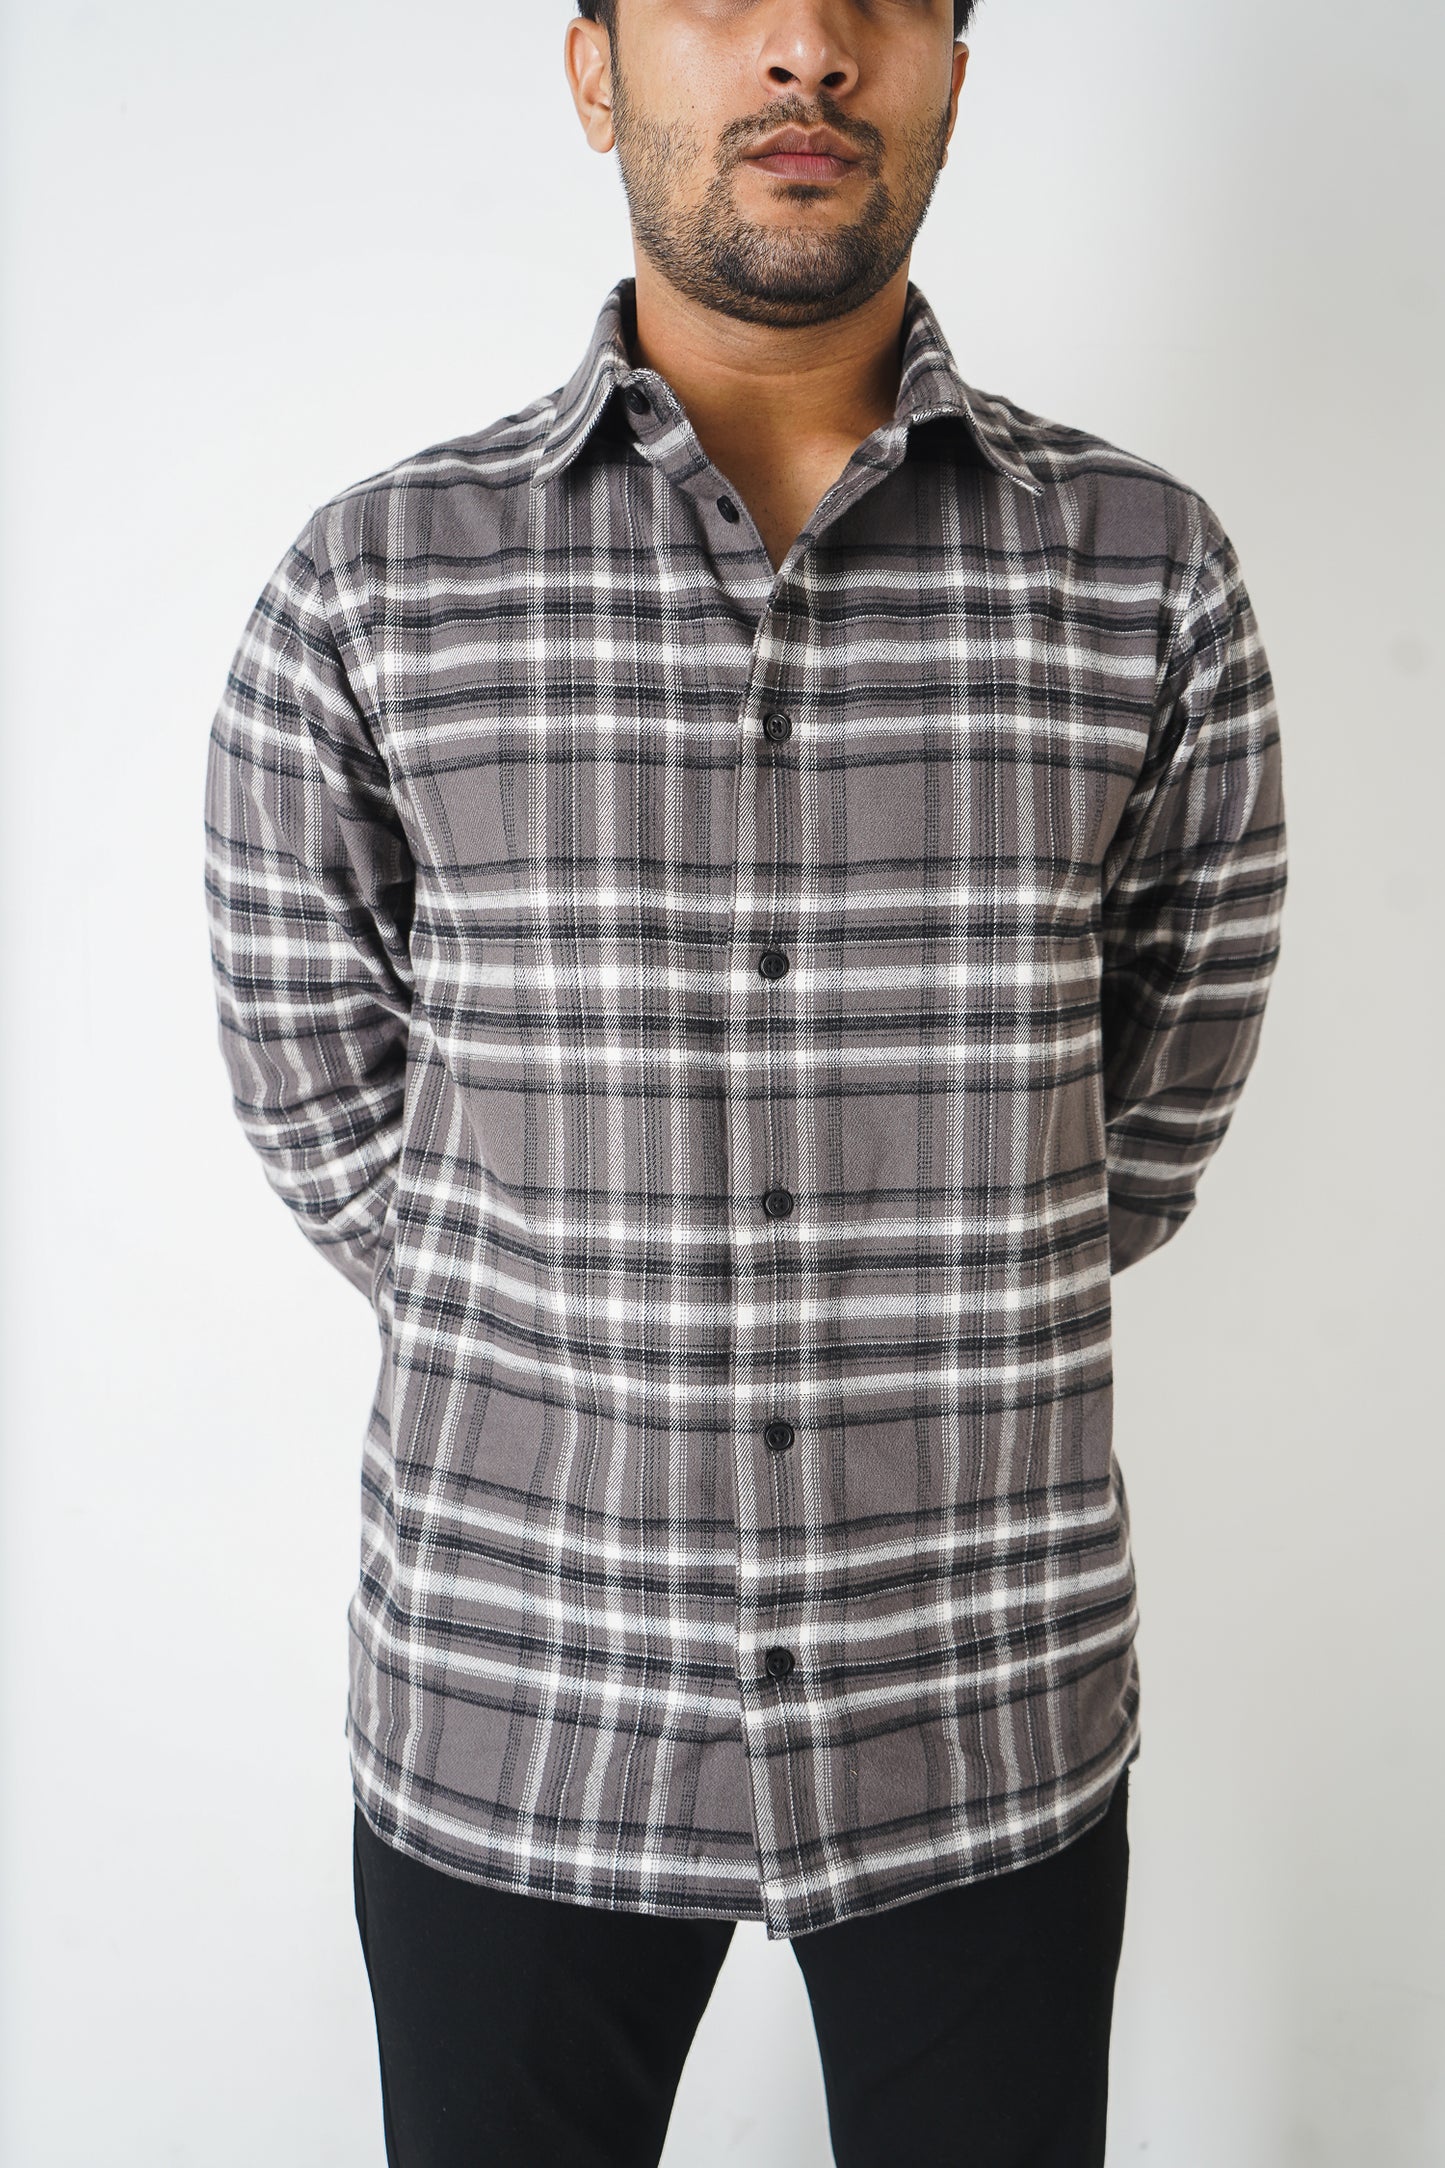 Flannel Shirt for Men - Dark Ash & Black White